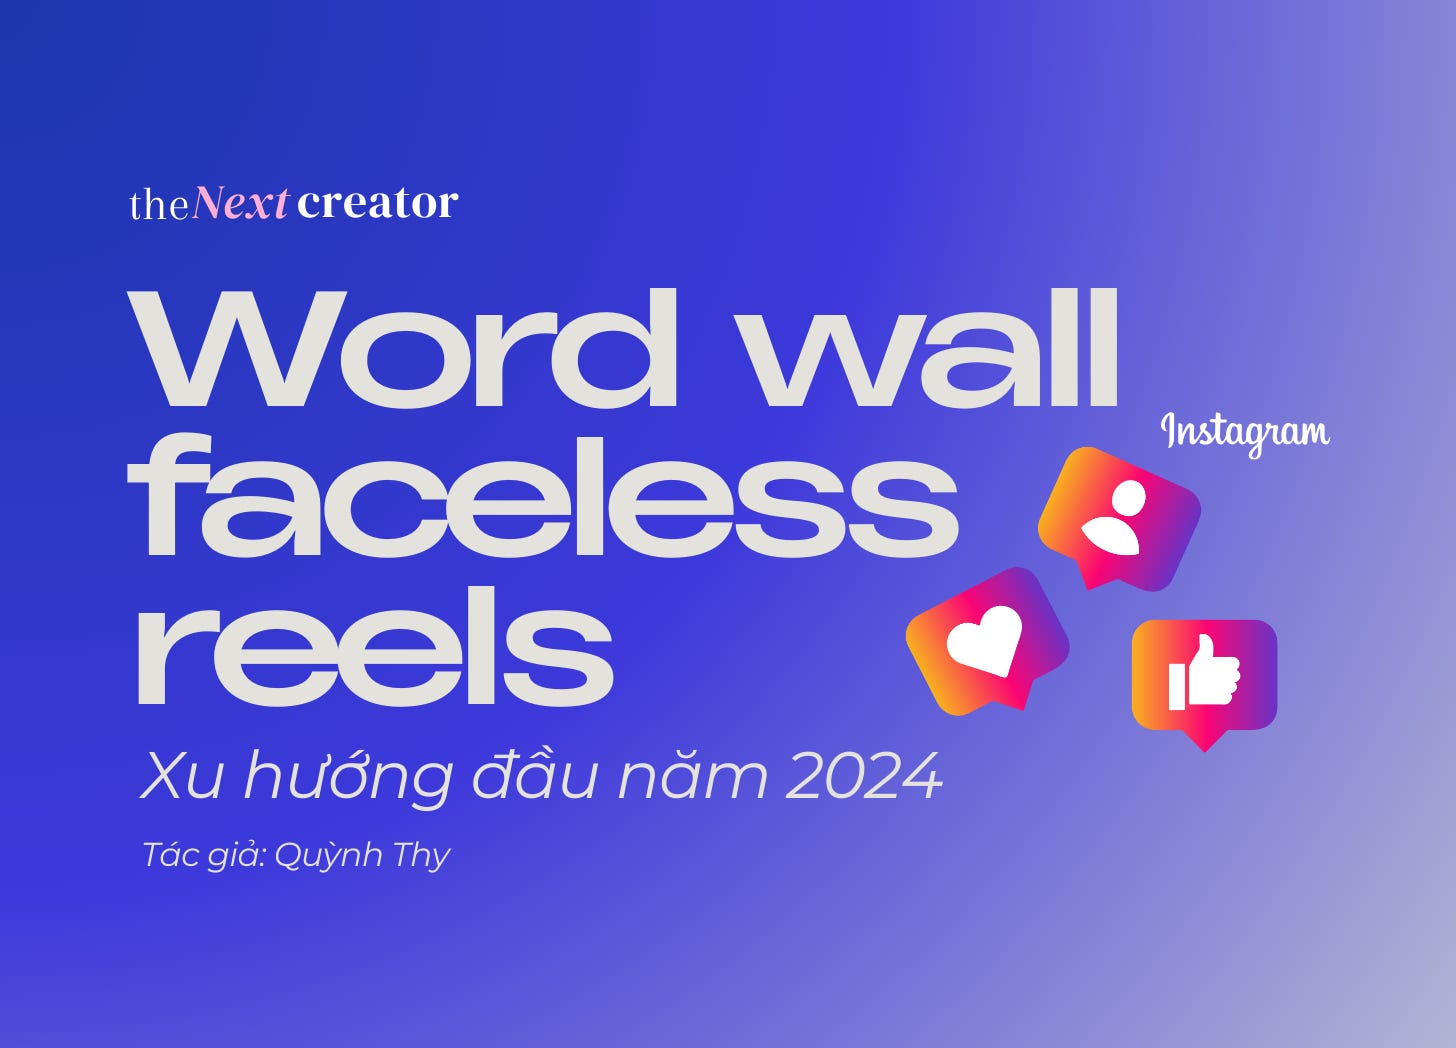 Word wall faceless reels - Xu hướng đầu năm 2024